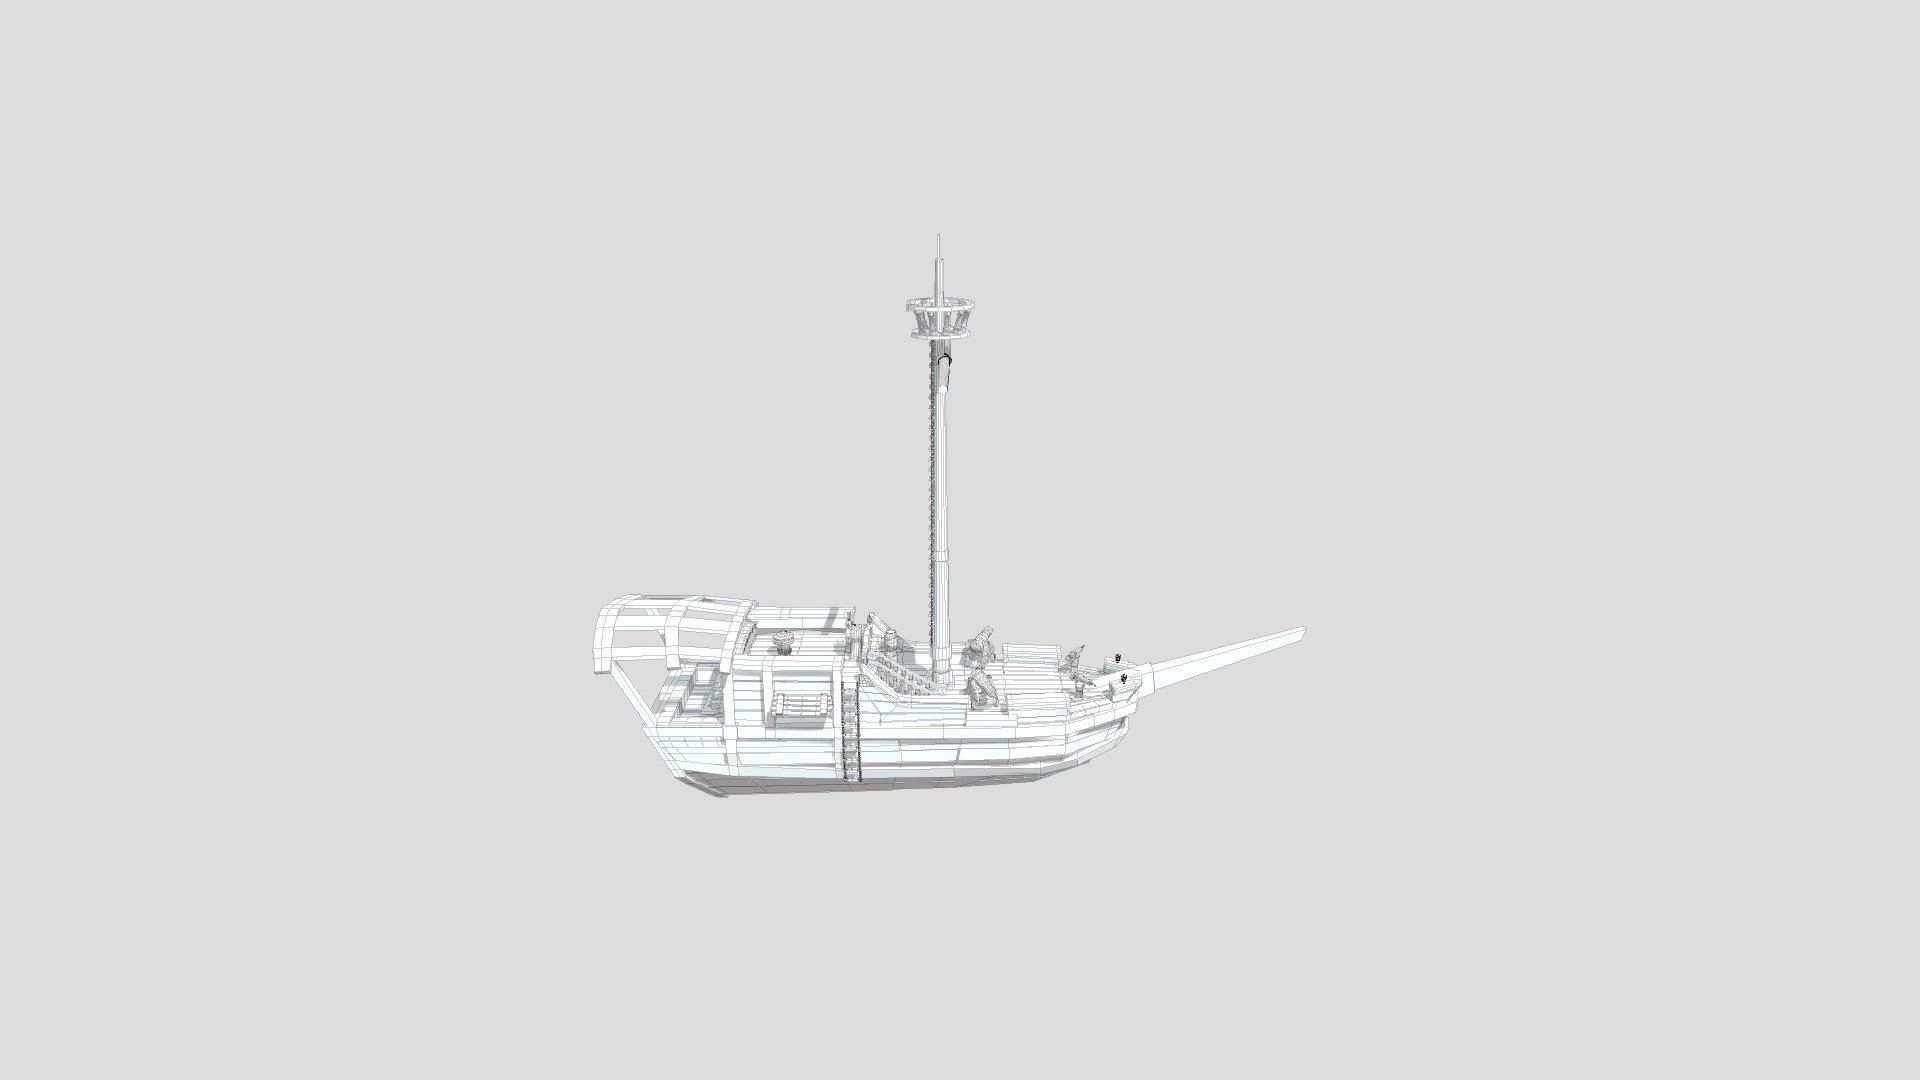 Sloop Sea of thieves 3D model by Tabbybeast (Tabbybeast